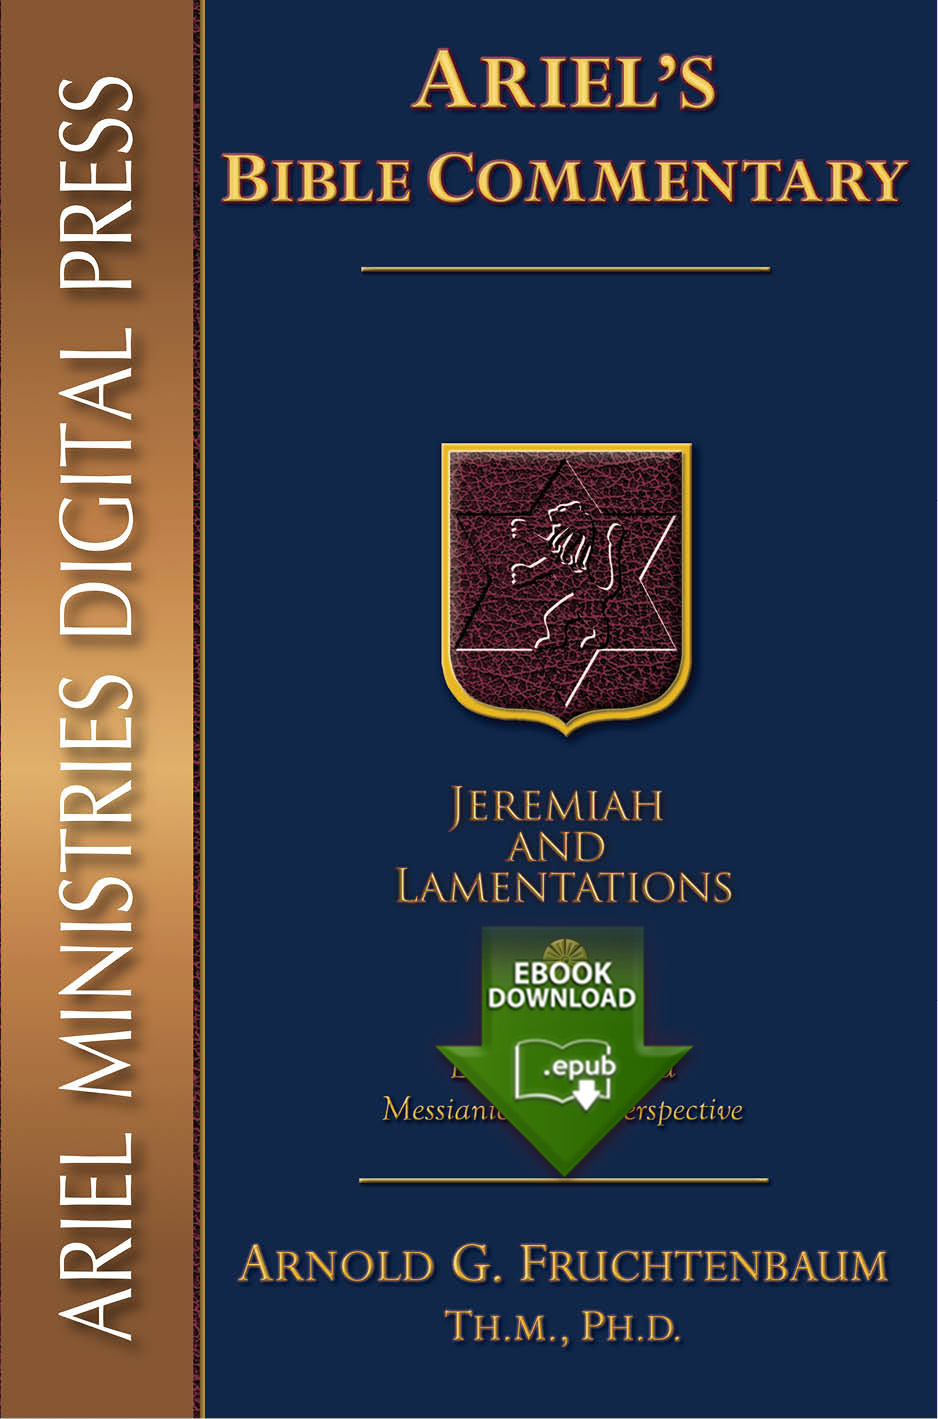 Jeremiah/Lamentations